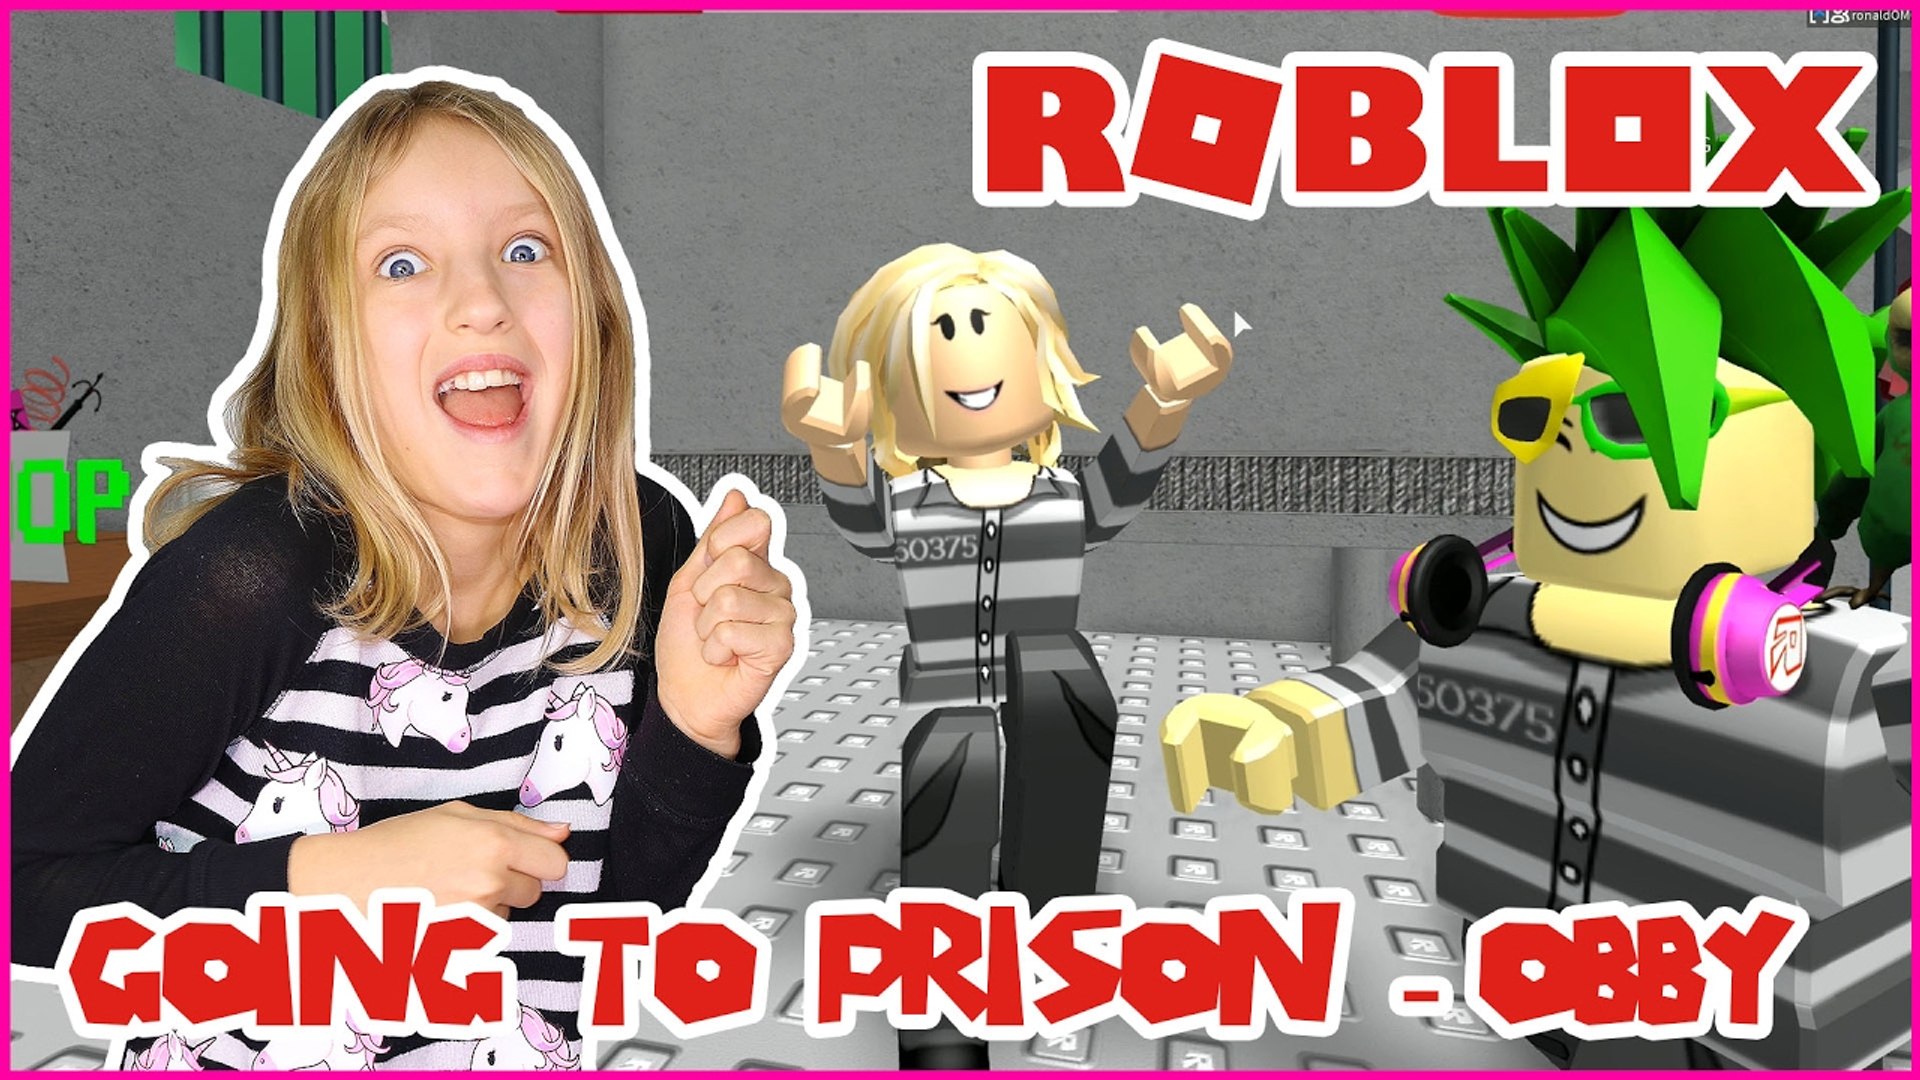 New] Escape Prison Obby - Roblox